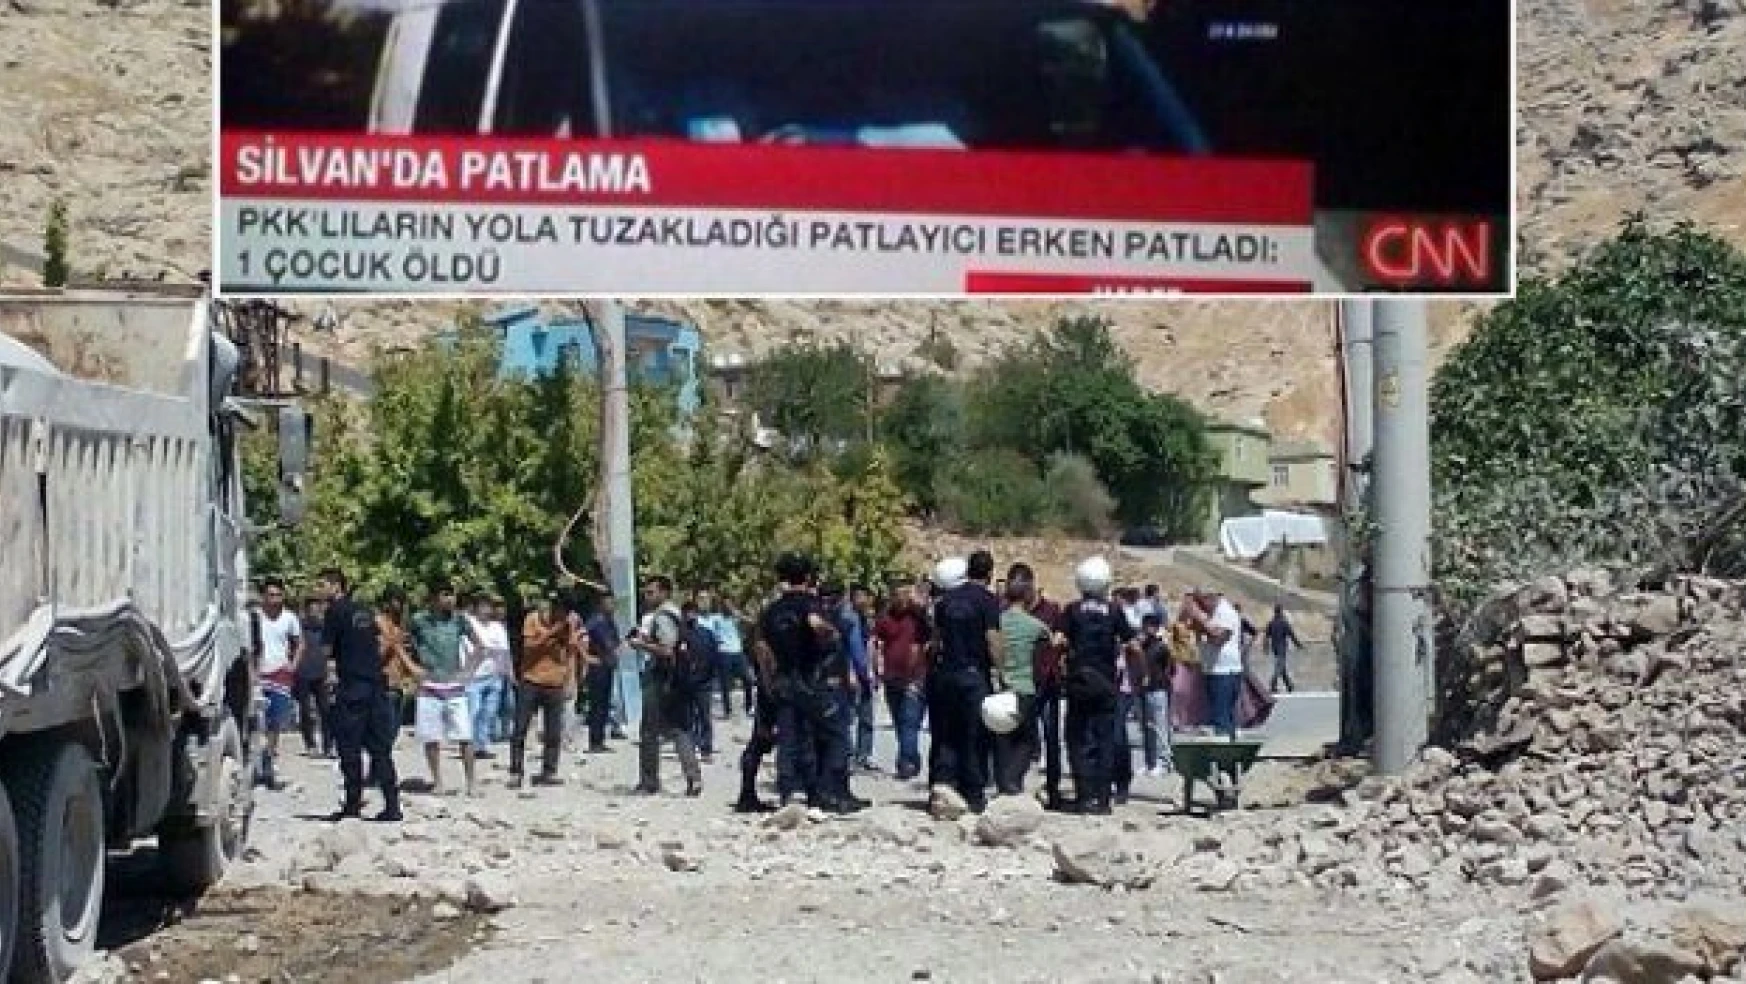 CNN Türk'ten tepki toplayan 'PKK' anonsu